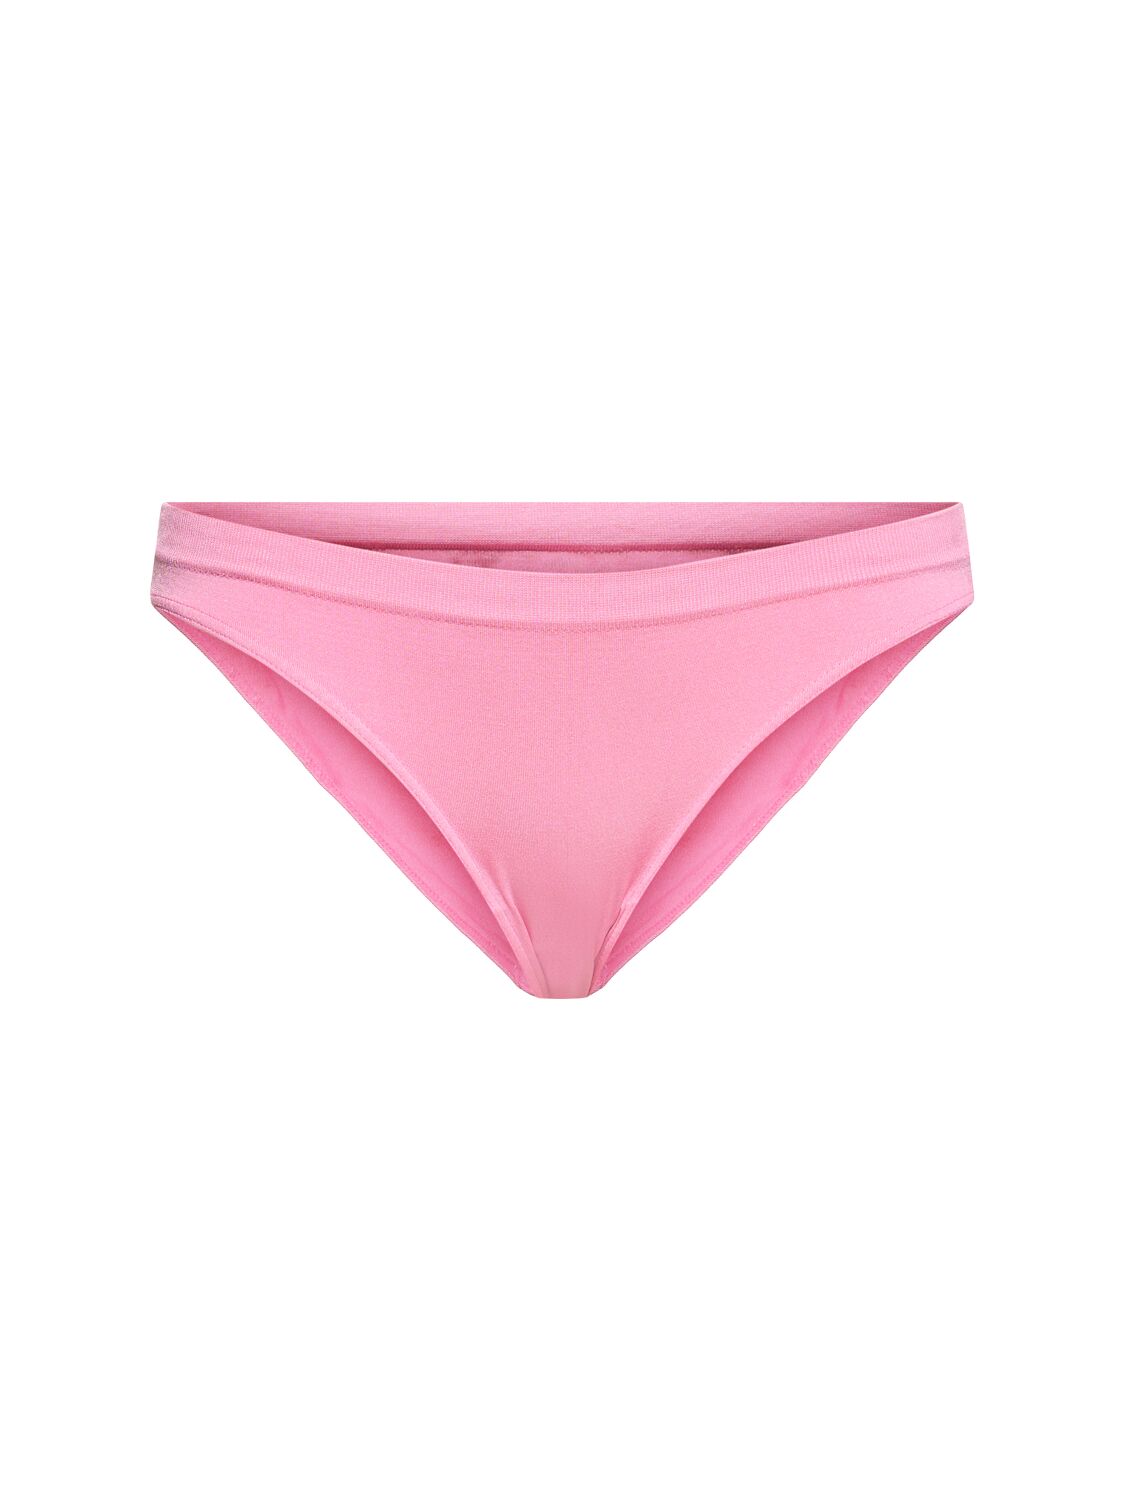 Prism Squared Evolve Bikini Bottoms In Pink